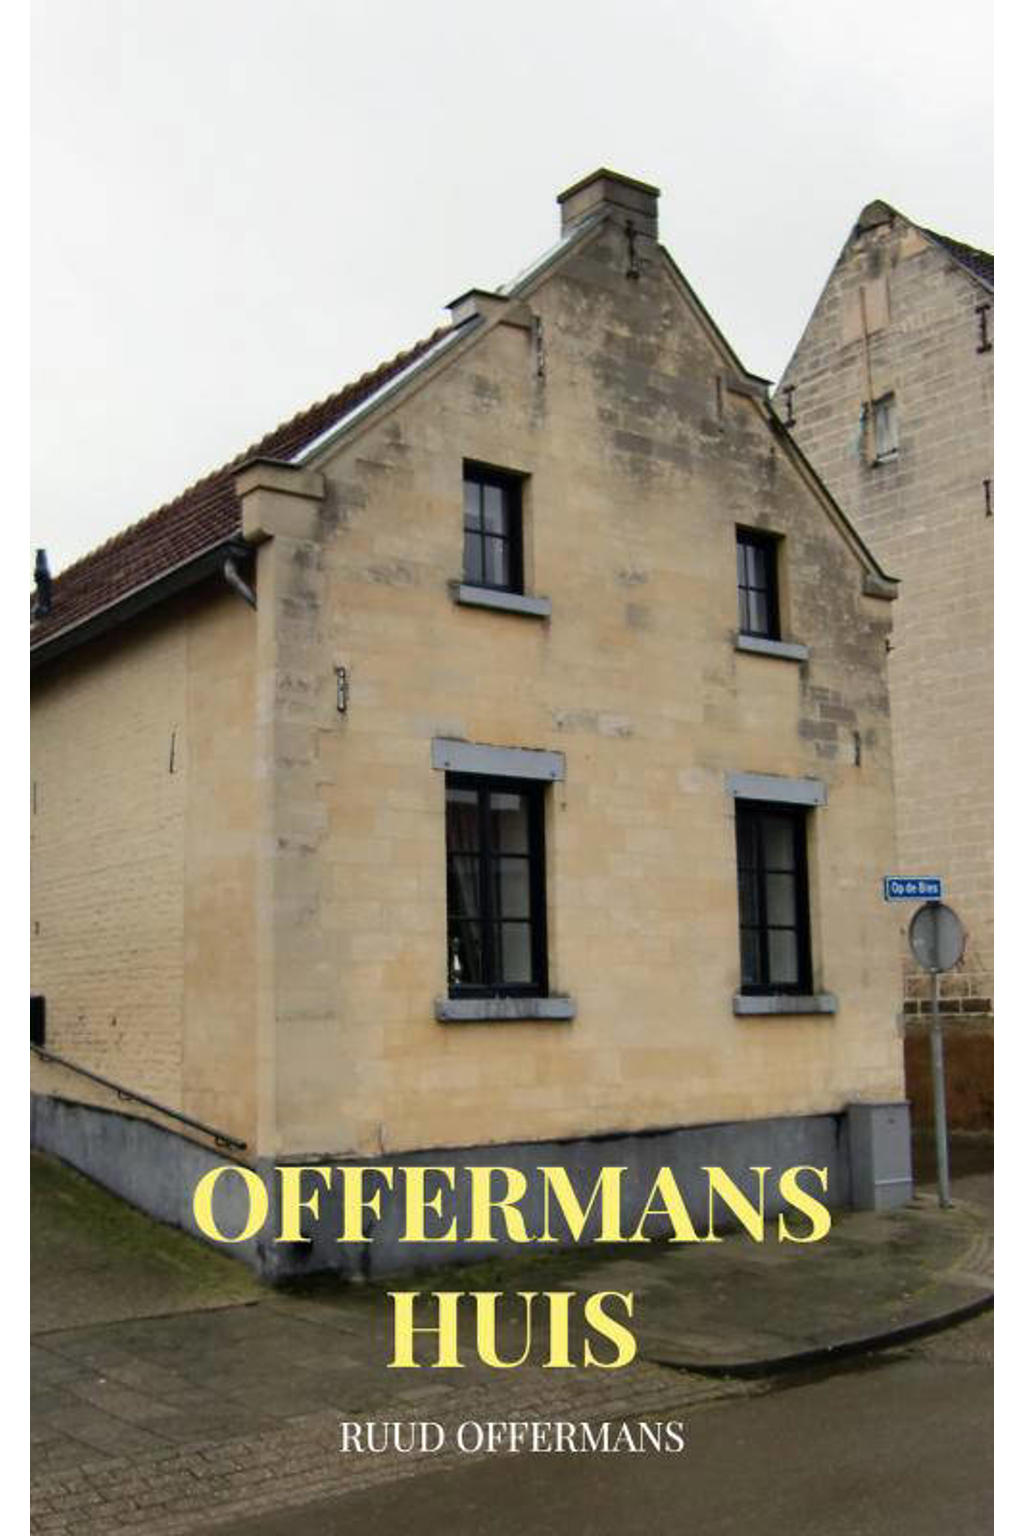 Offermans huis - Ruud Offermans